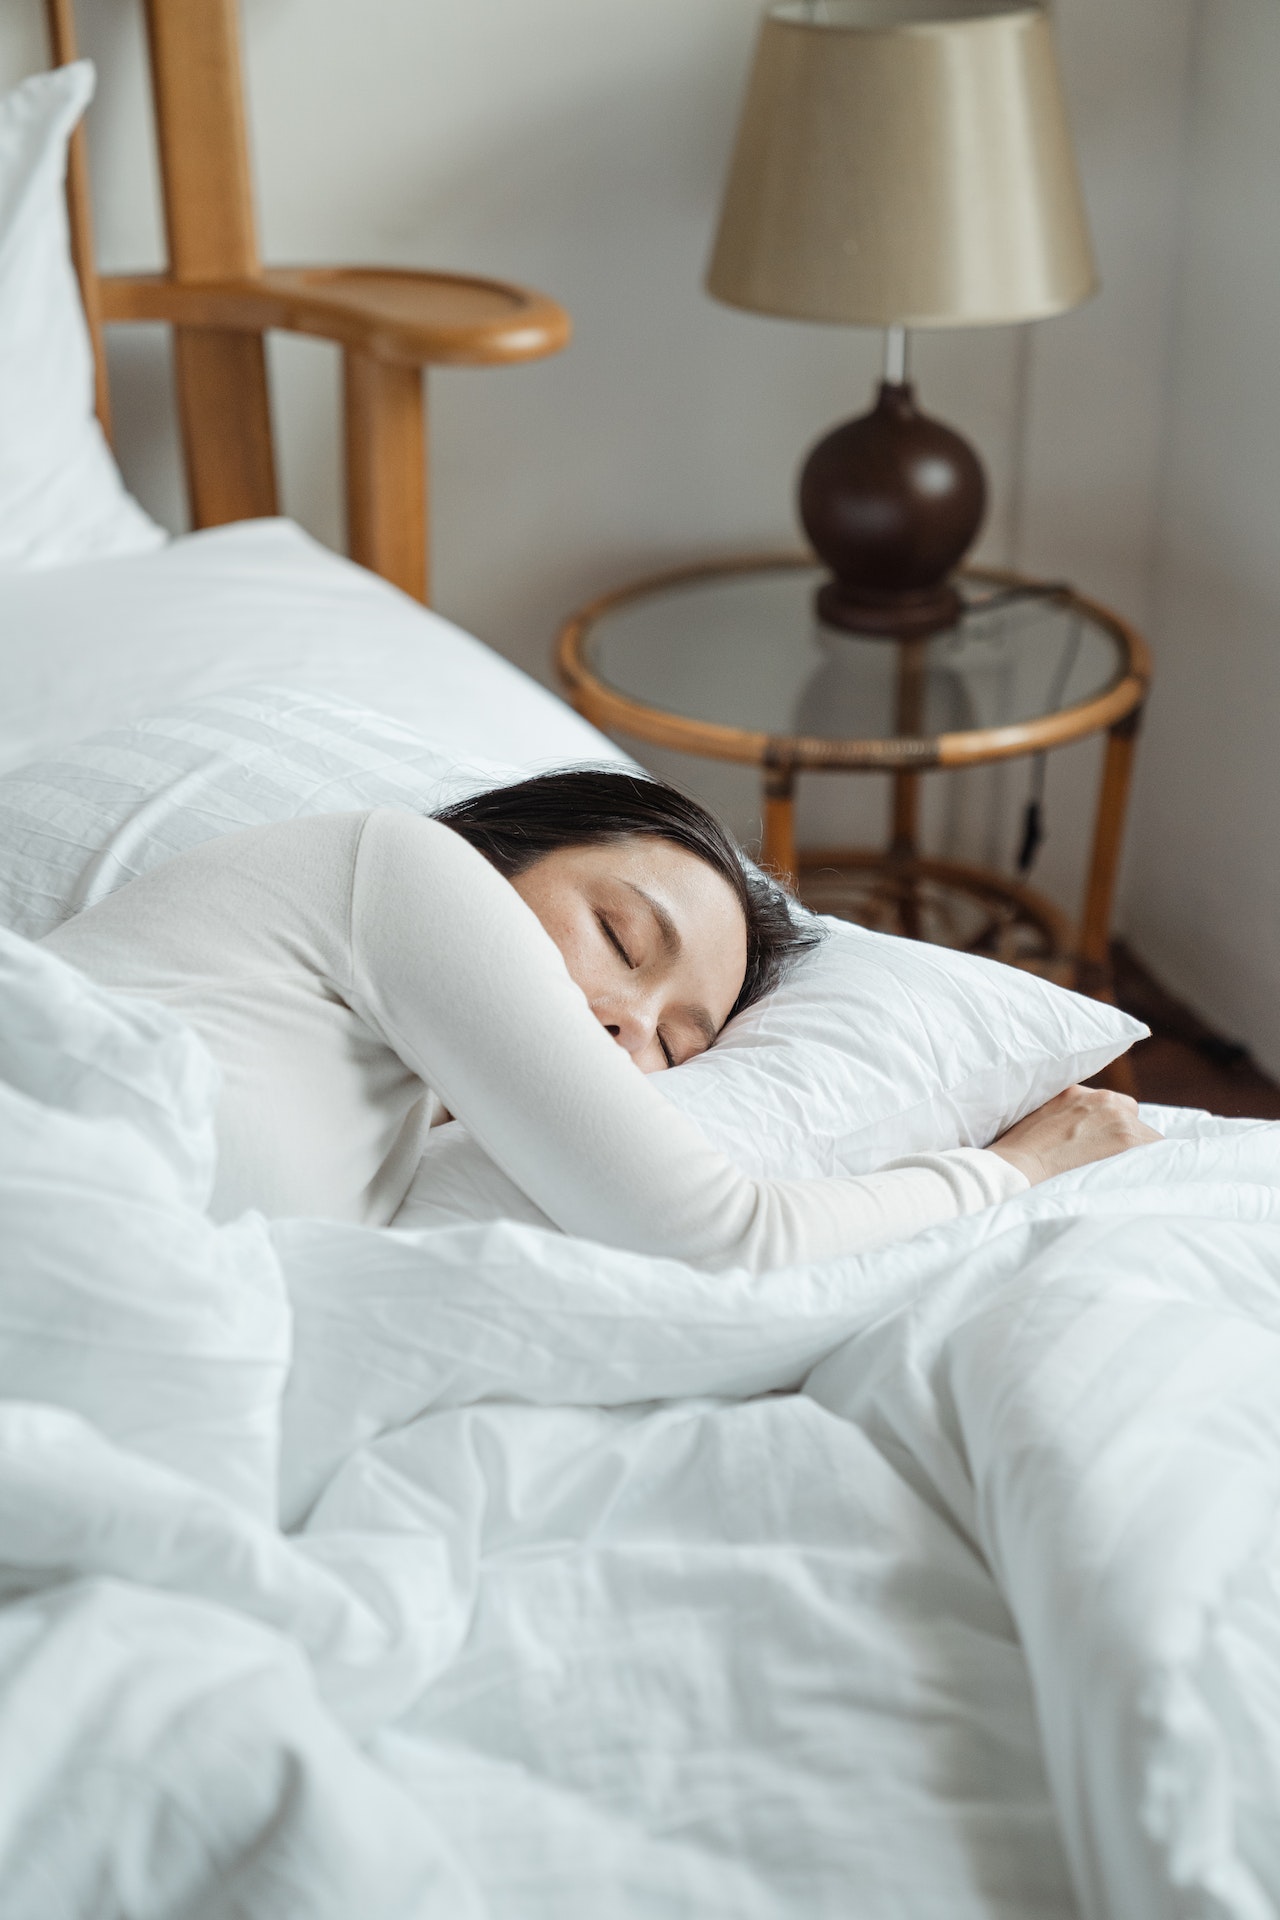 Κάνεις αρκετό ύπνο REM; Η απάντηση μπορεί να βρίσκεται στα όνειρά σου